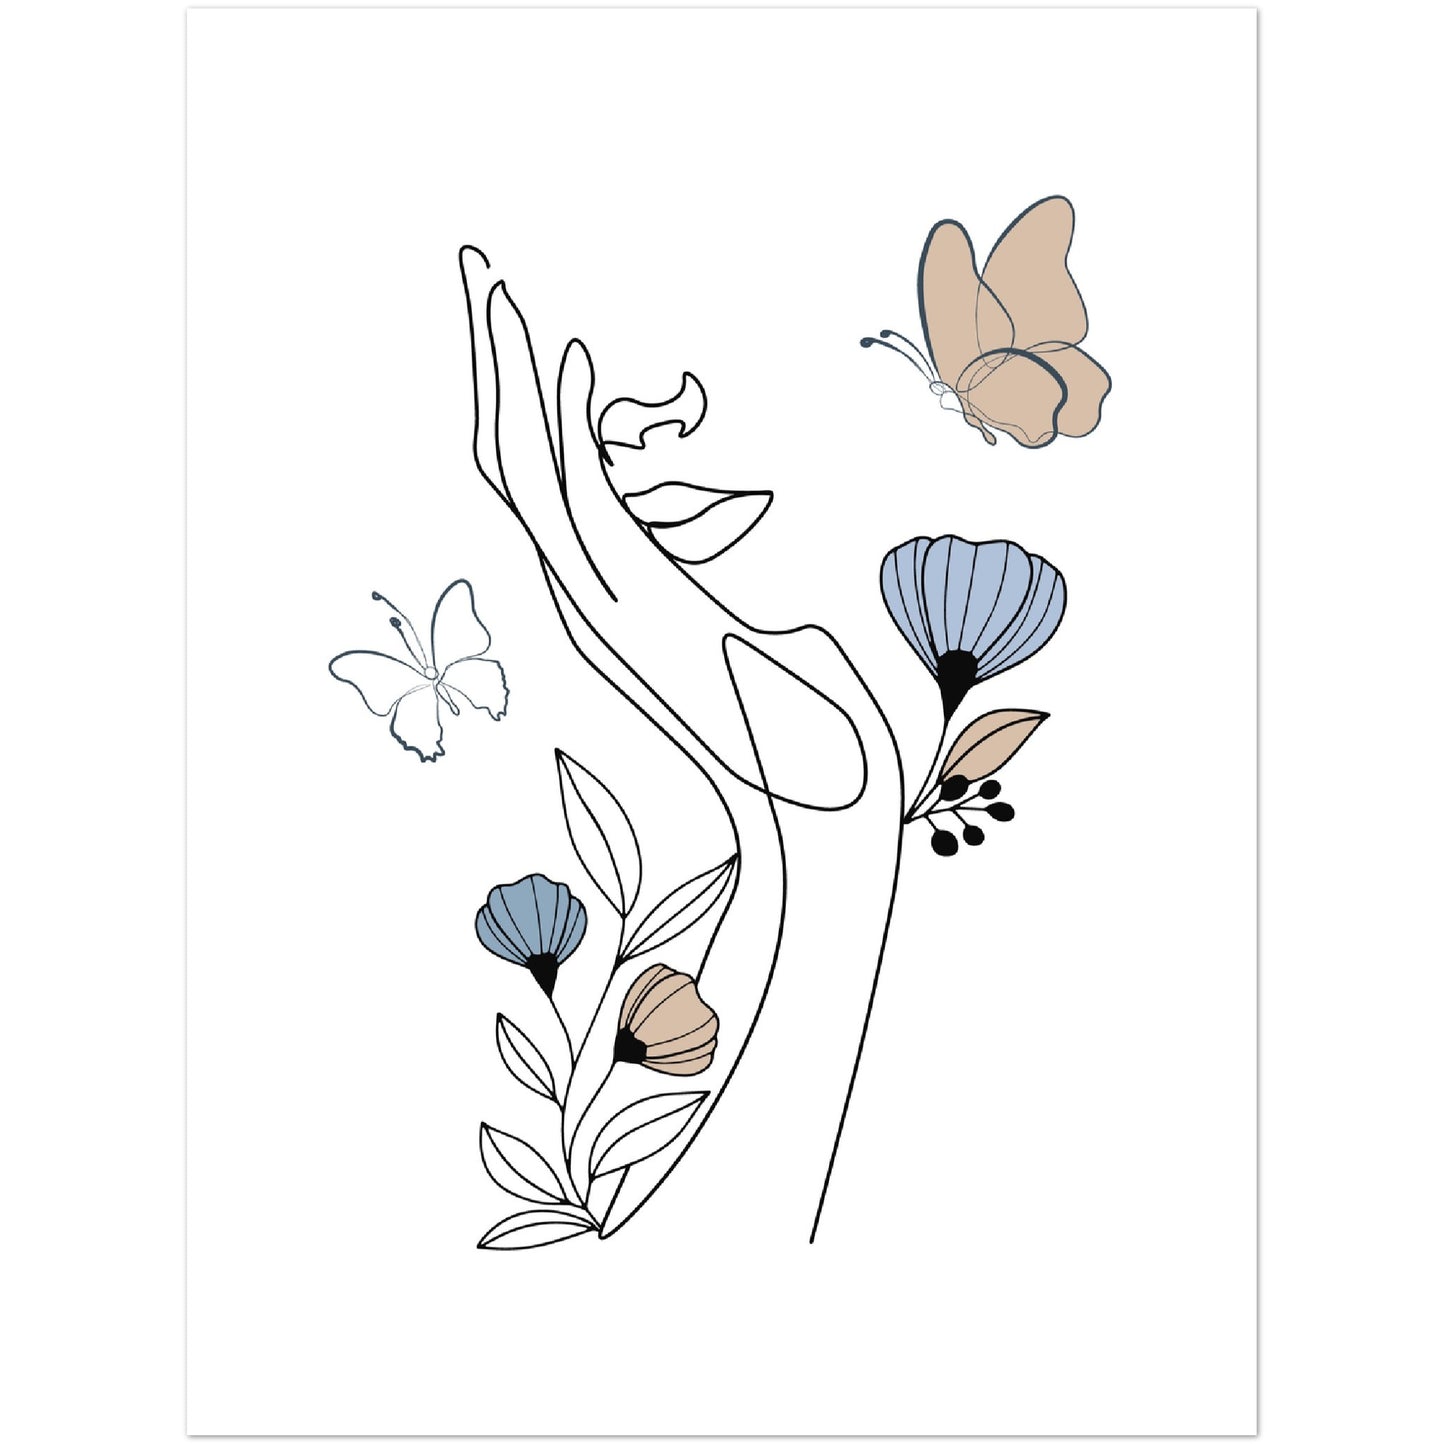 Flowers and Butterflies Line Art Print